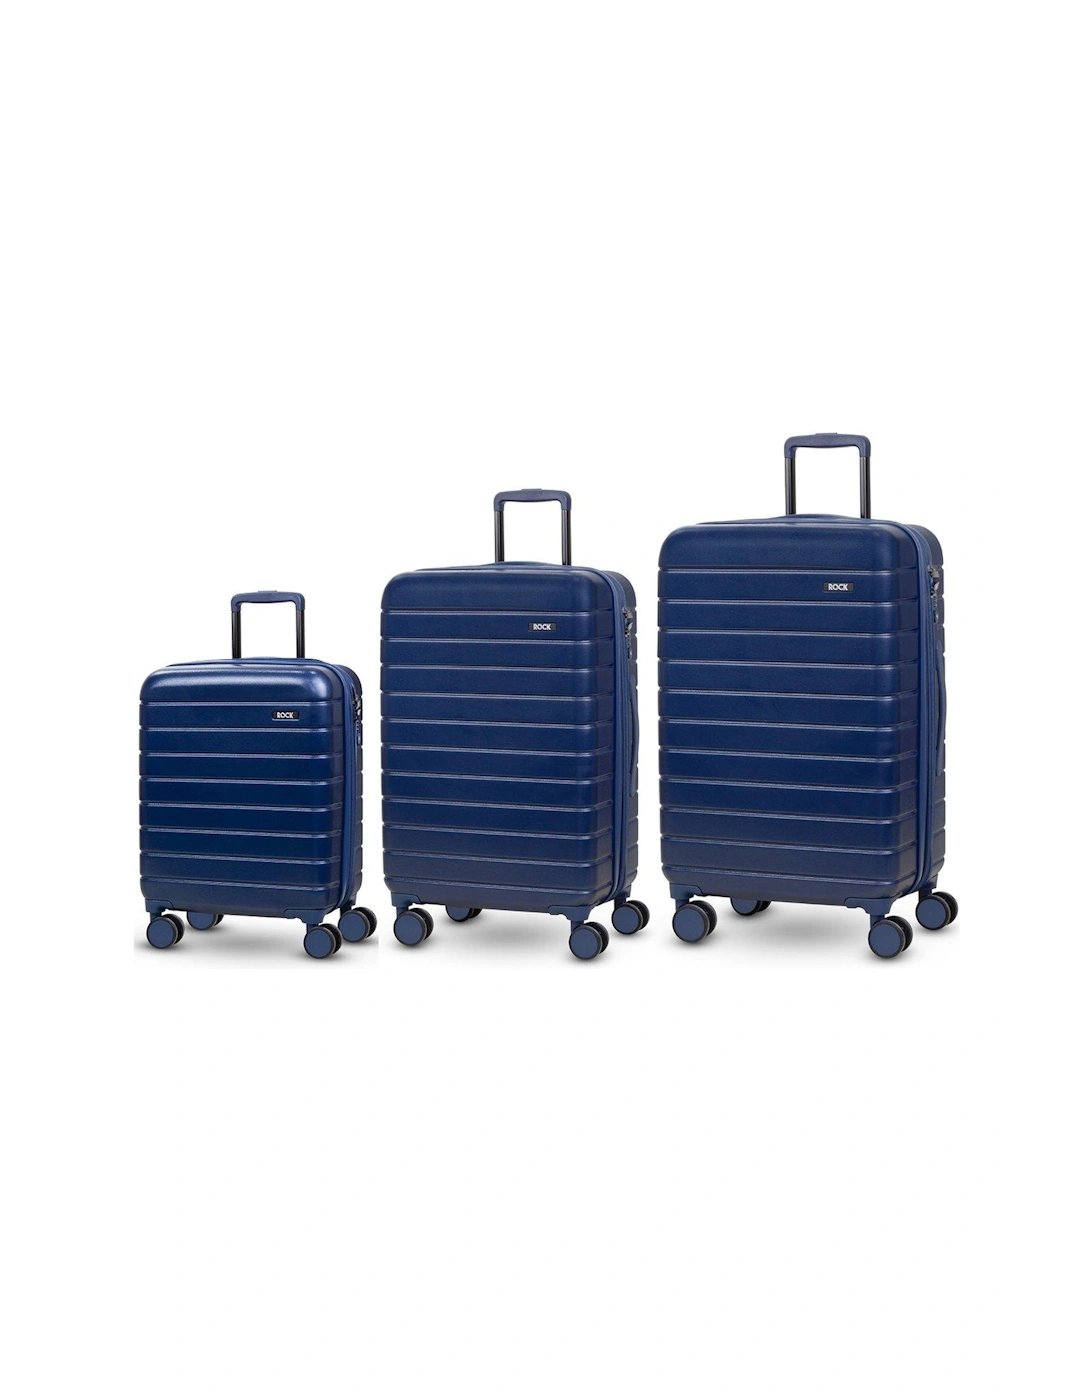 Novo 8-Wheel Suitcases 3 piece Set - Navy, 2 of 1